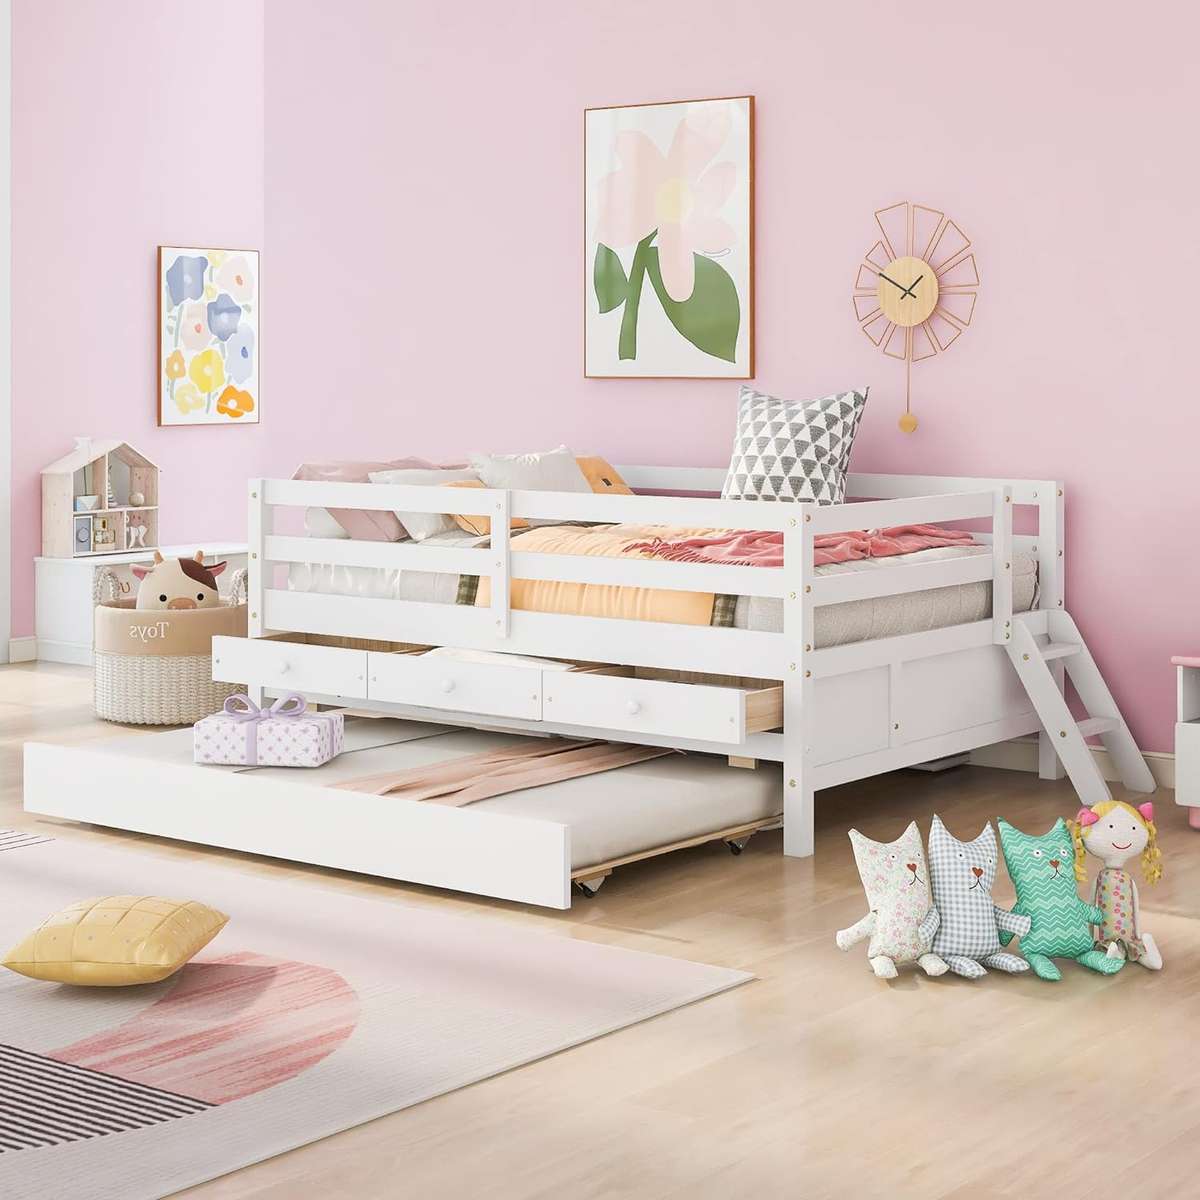 Nowe łóżko Angeliny puzzle online ze zdjęcia